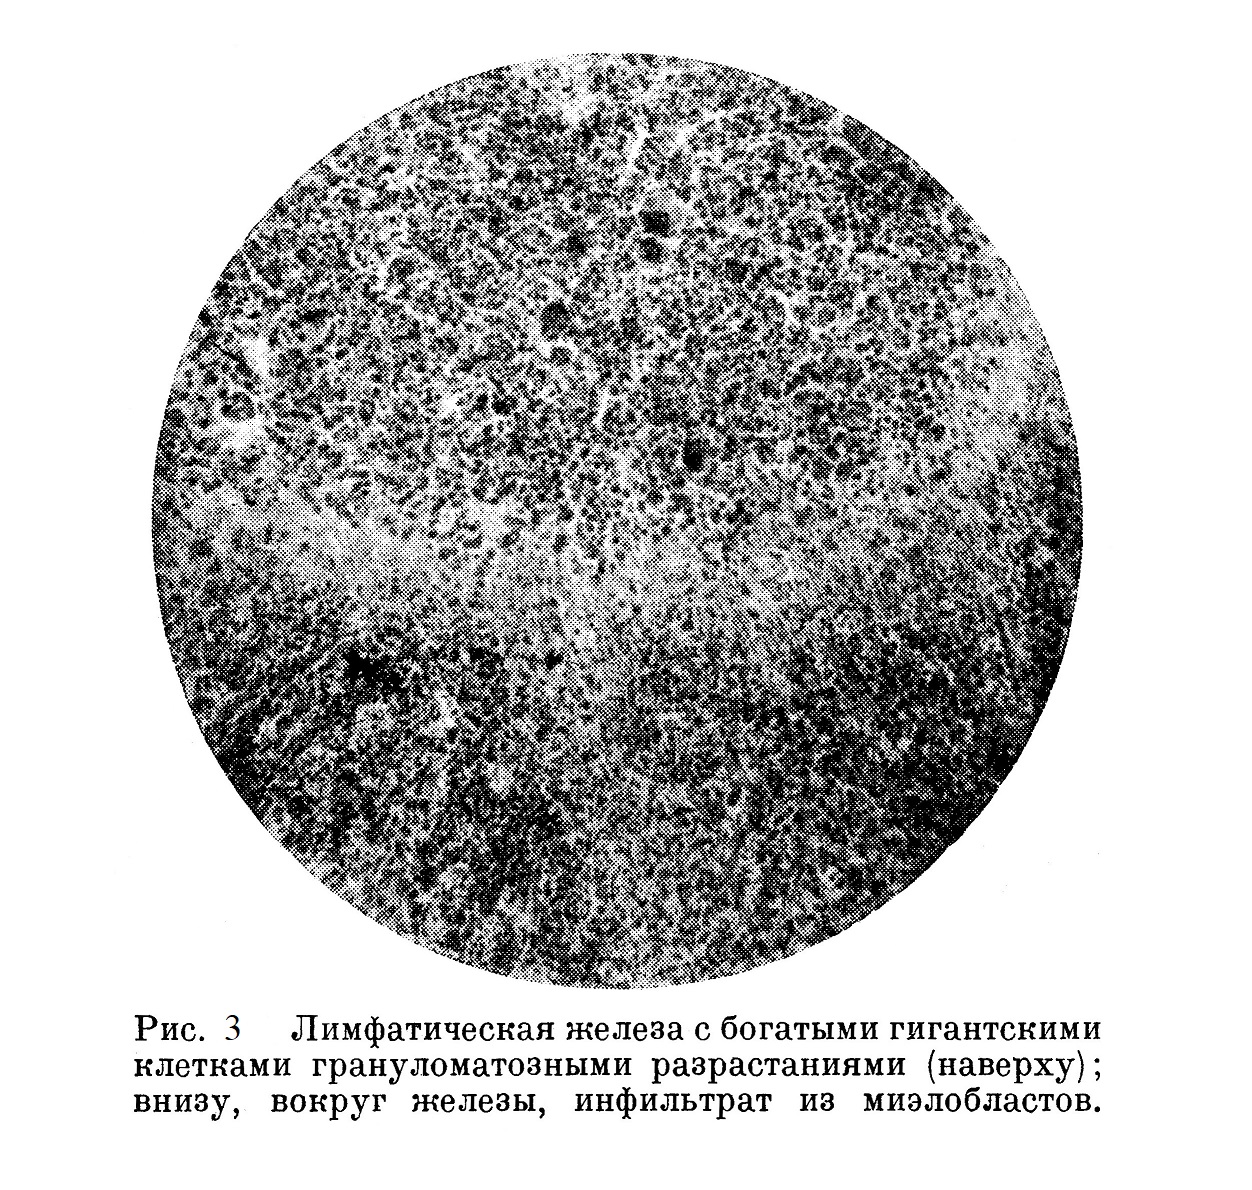 Лимфатическая железа с богатыми гигантскими клетками гранулематозными разрастаниями (наверху); внизу, вокруг железы, инфильтрат из миэлобластов.